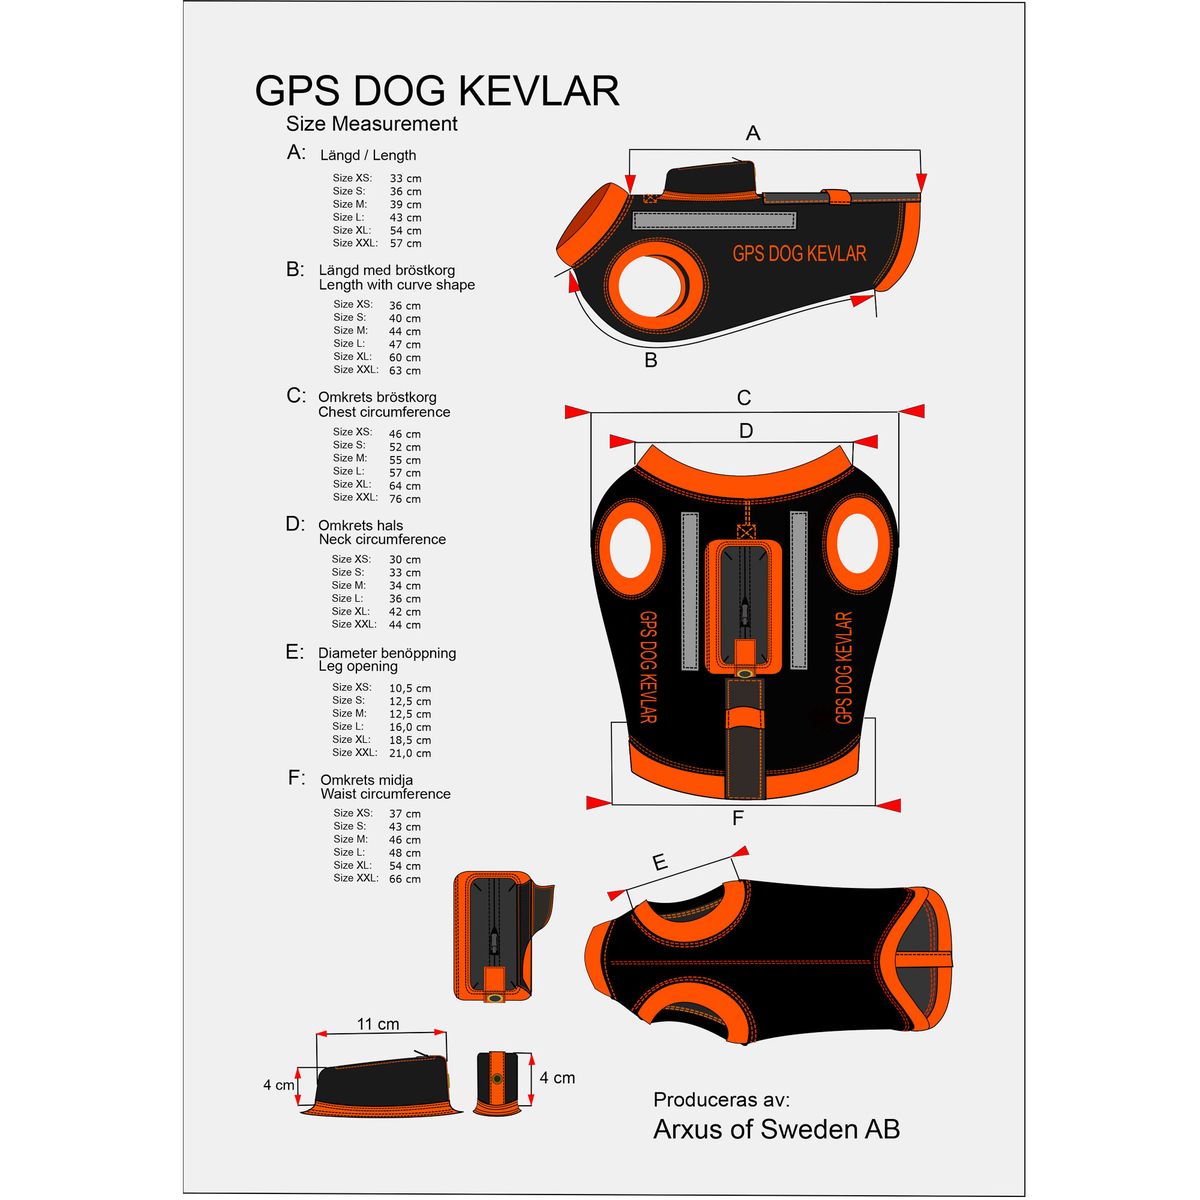 GPS Dog Kevlar